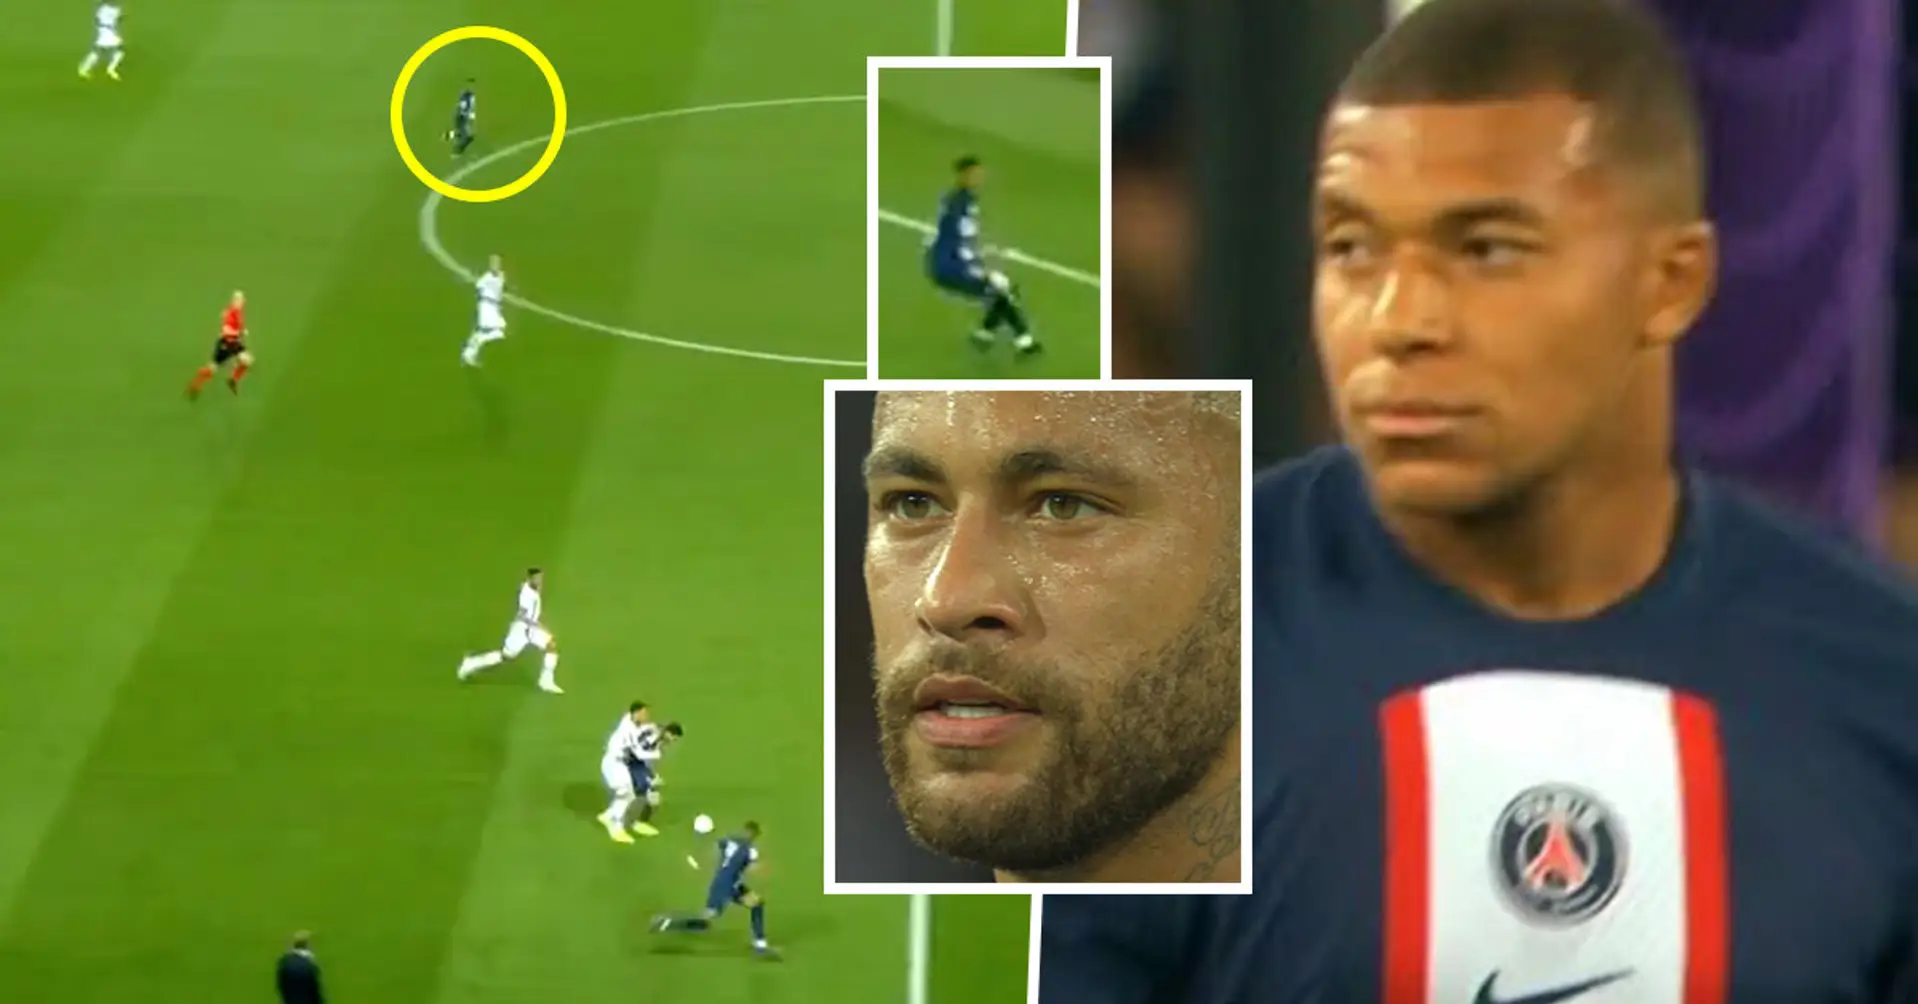 Mbappe weigerte sich, einen Pass auf Neymar zu spielen, der durch das Feld sprintete und in einer idealen Position war, um zu treffen 